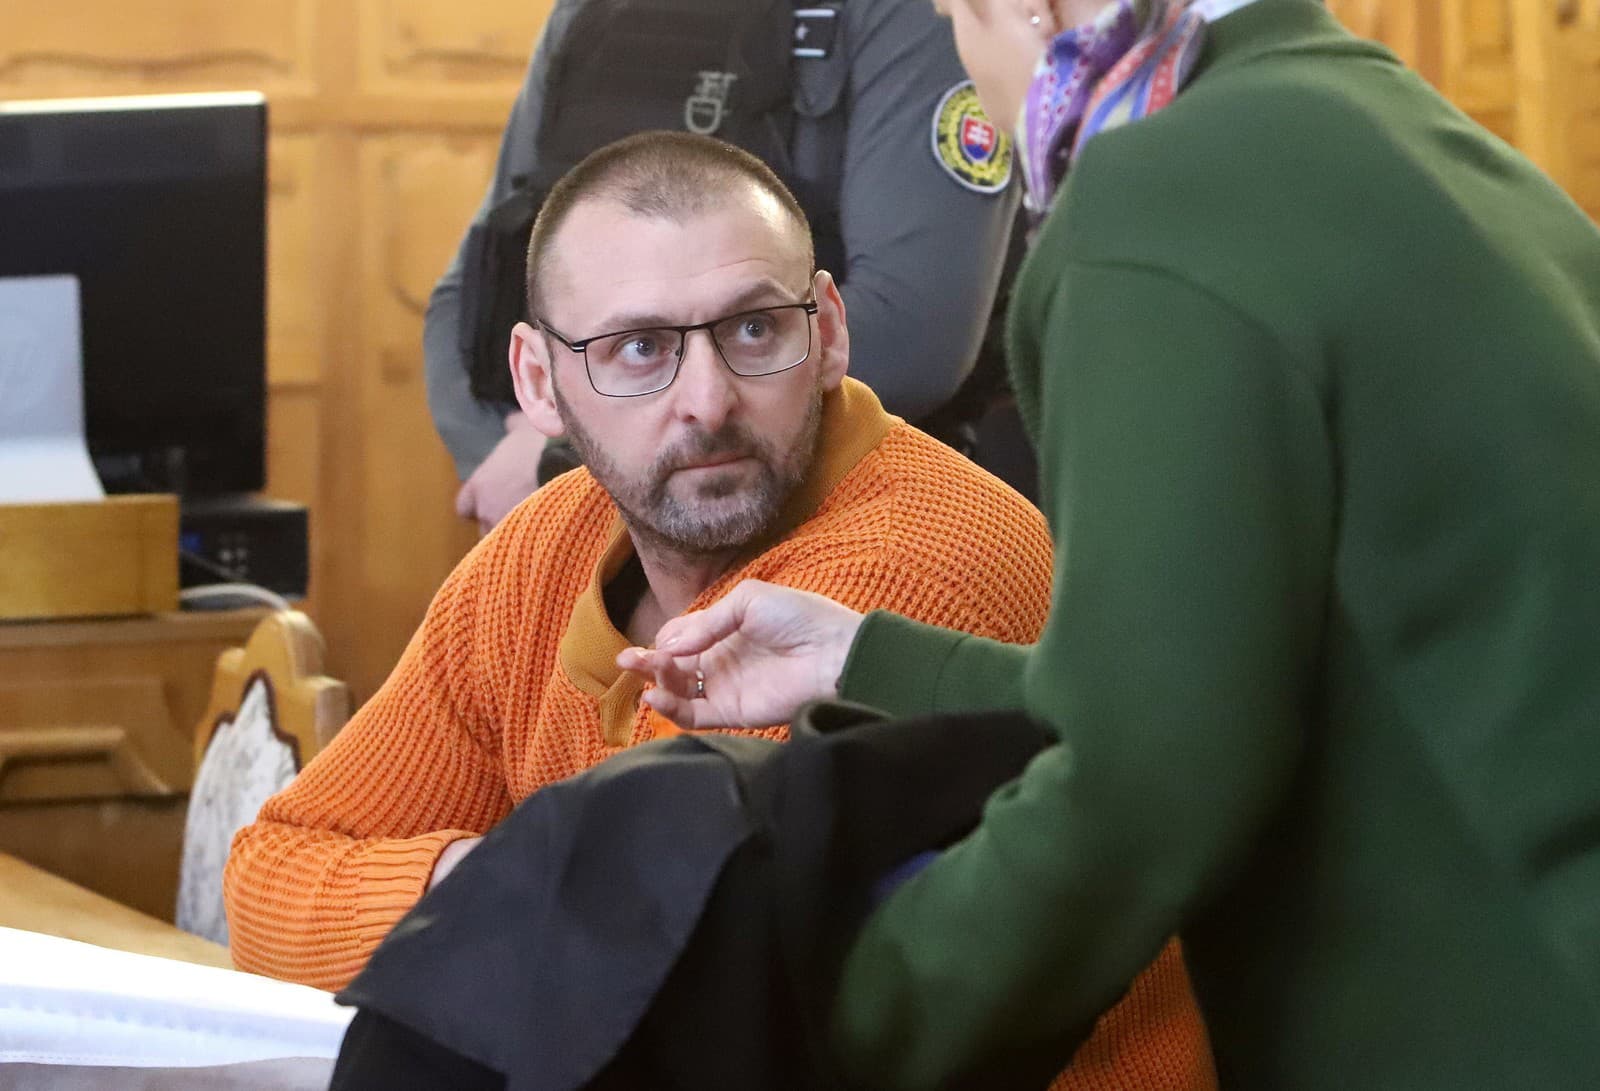 Na Špecializovanom trestnom súde (ŠTS) v Banskej Bystrici sa vo štvrtok začalo súdne pojednávanie v prípade mafiánskej vraždy Róberta Niguta